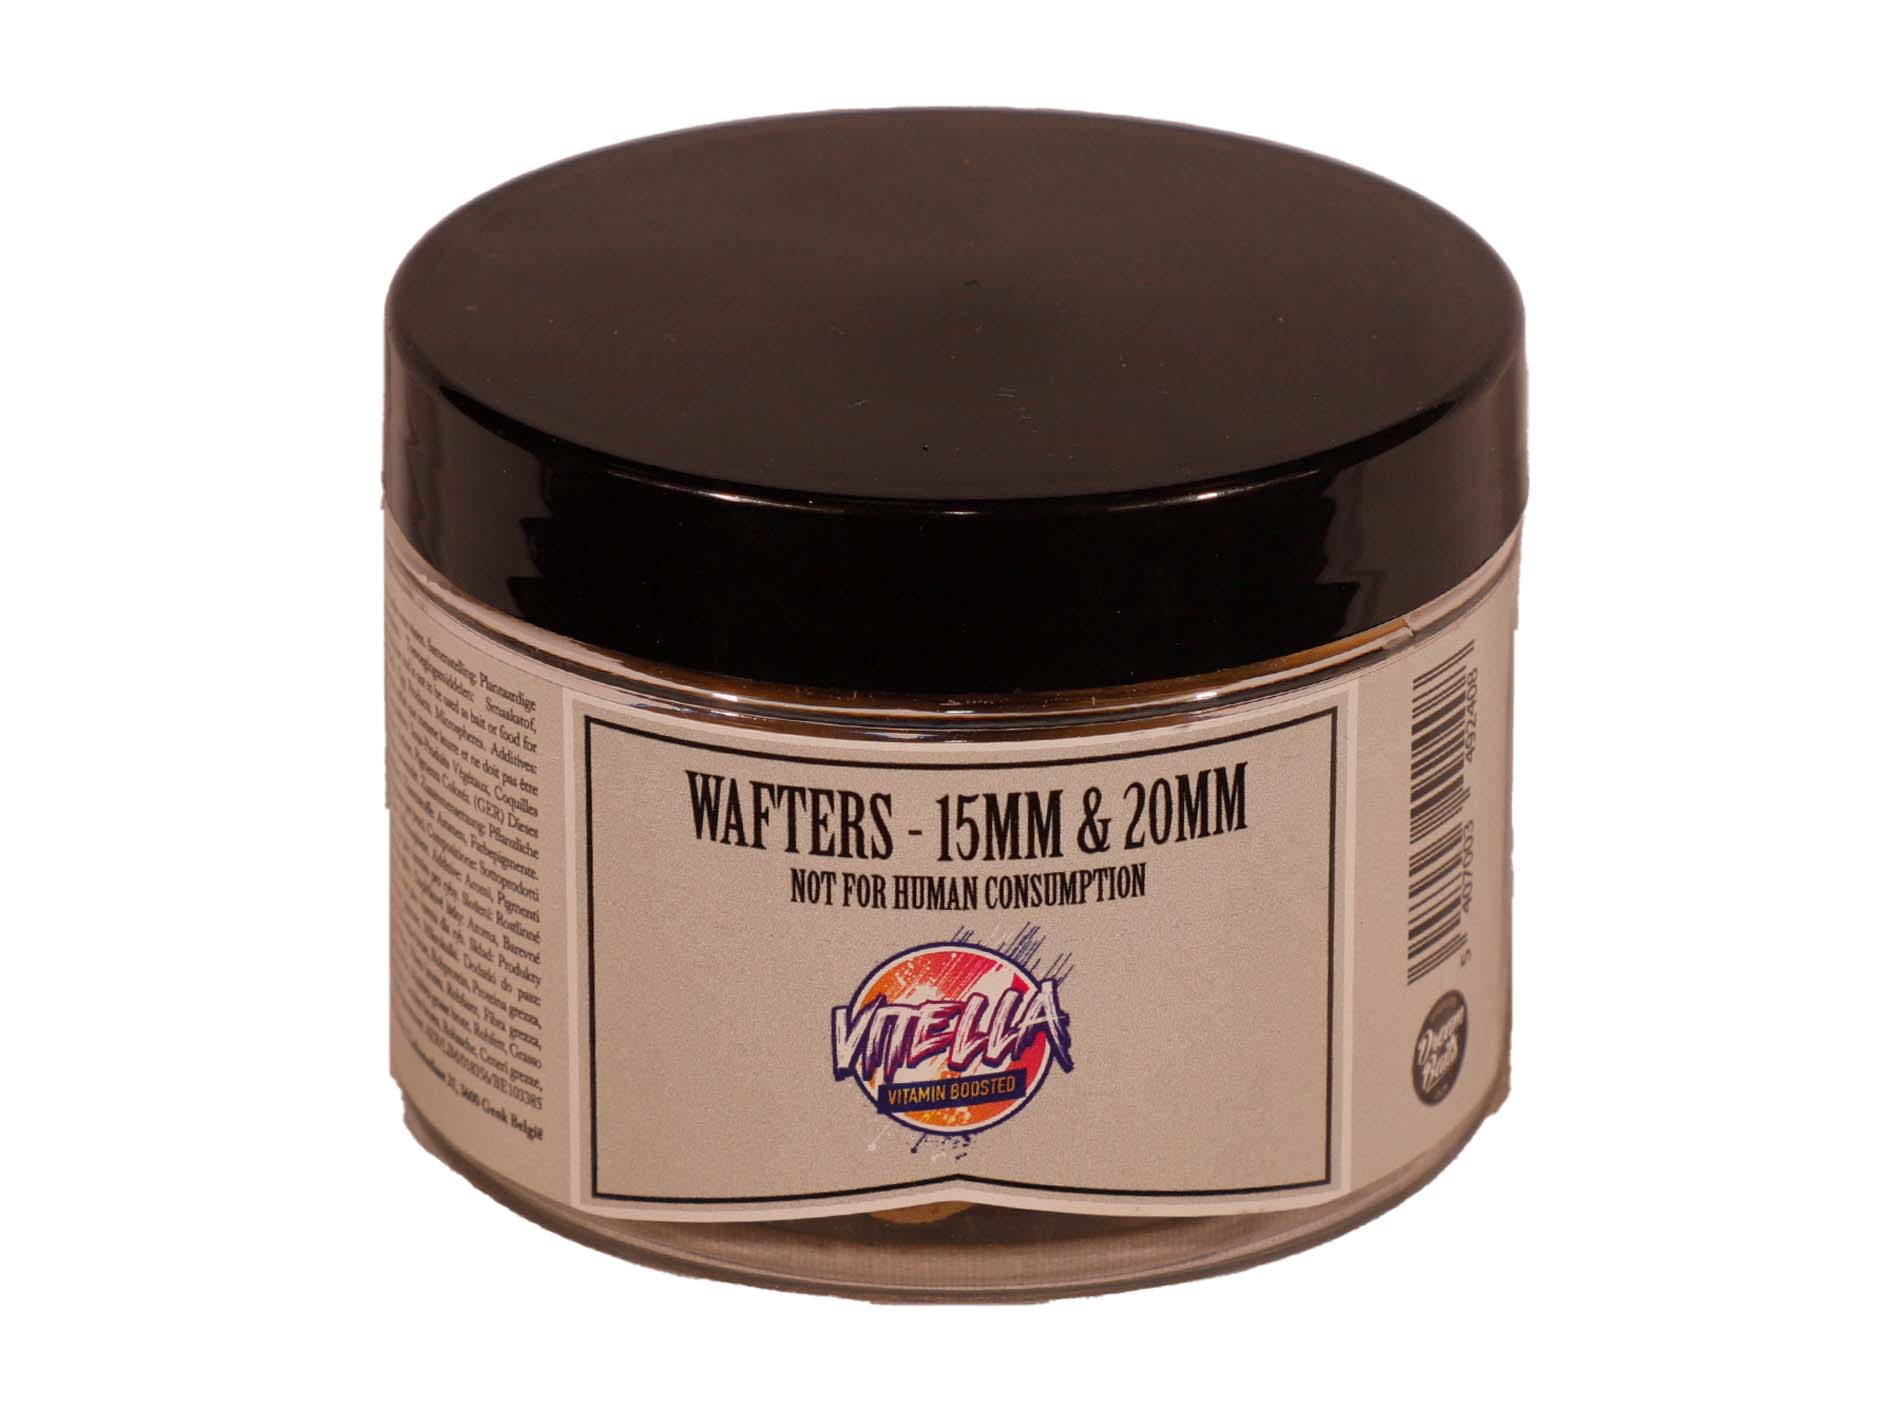 Dreambaits 15mm & 20mm Wafter Mix (50g) - Vitella